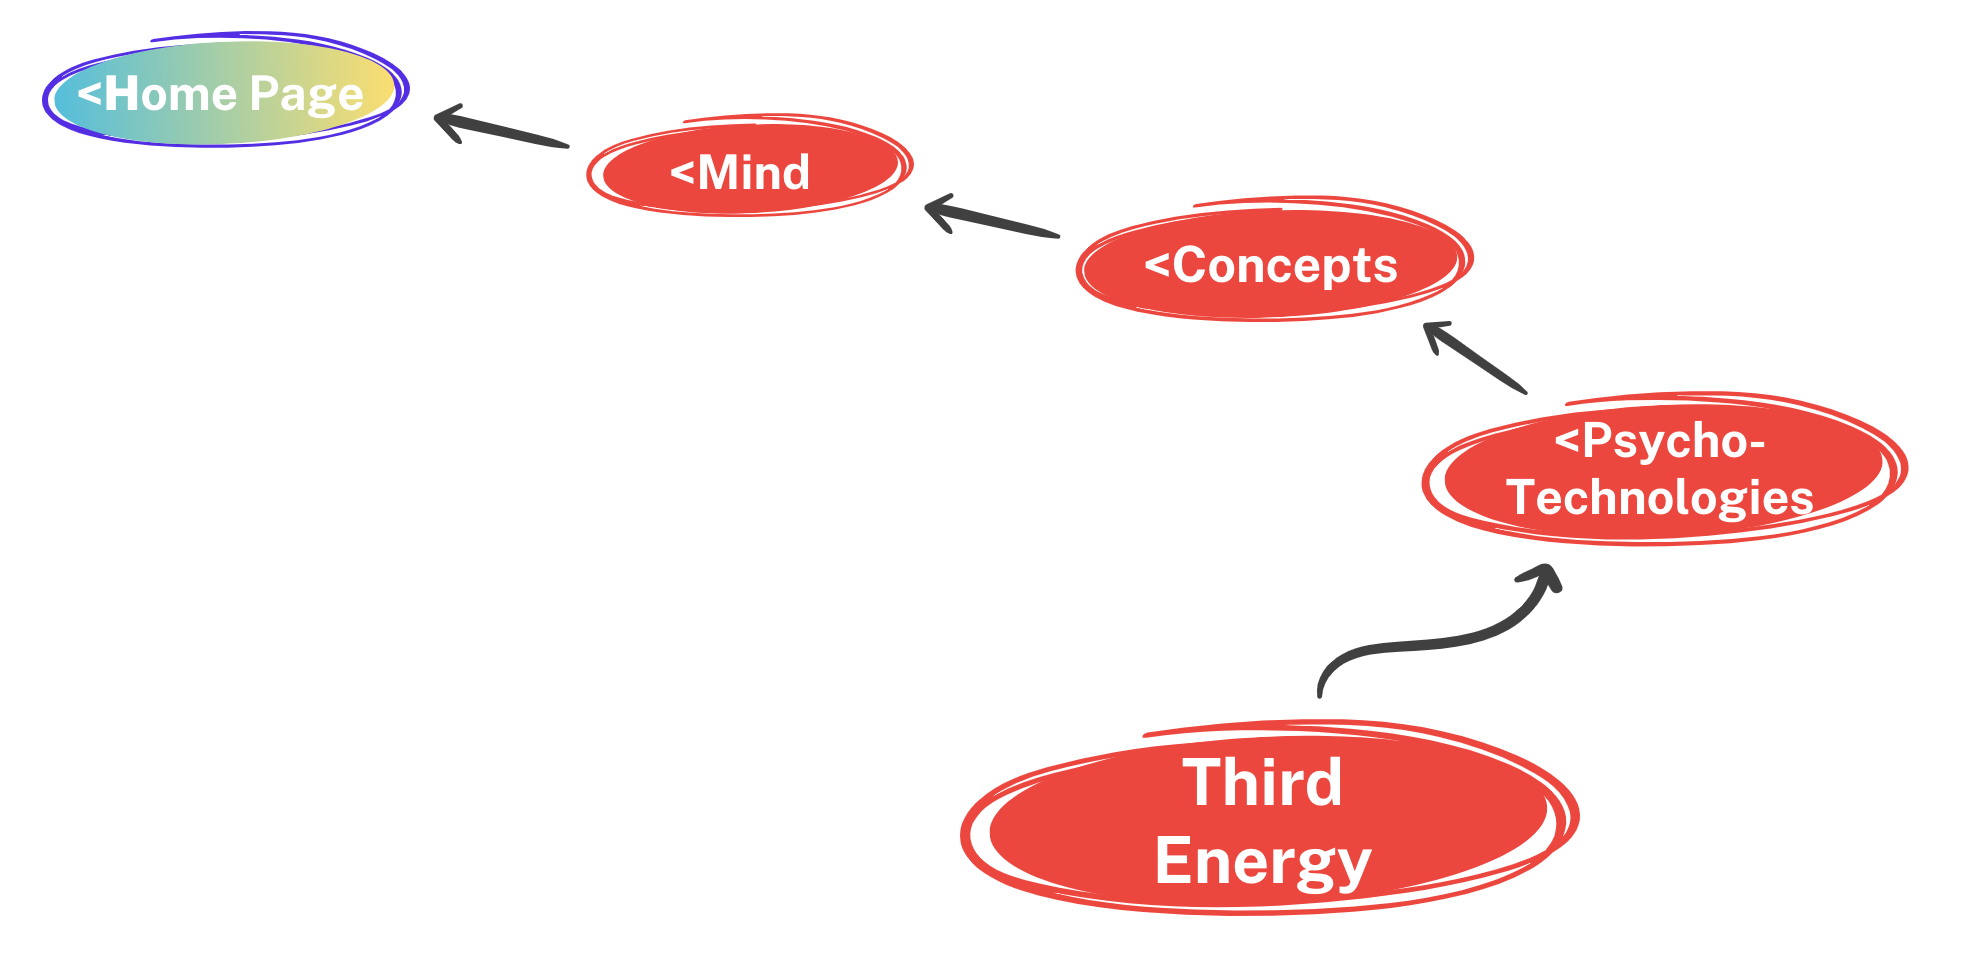 Third Energy